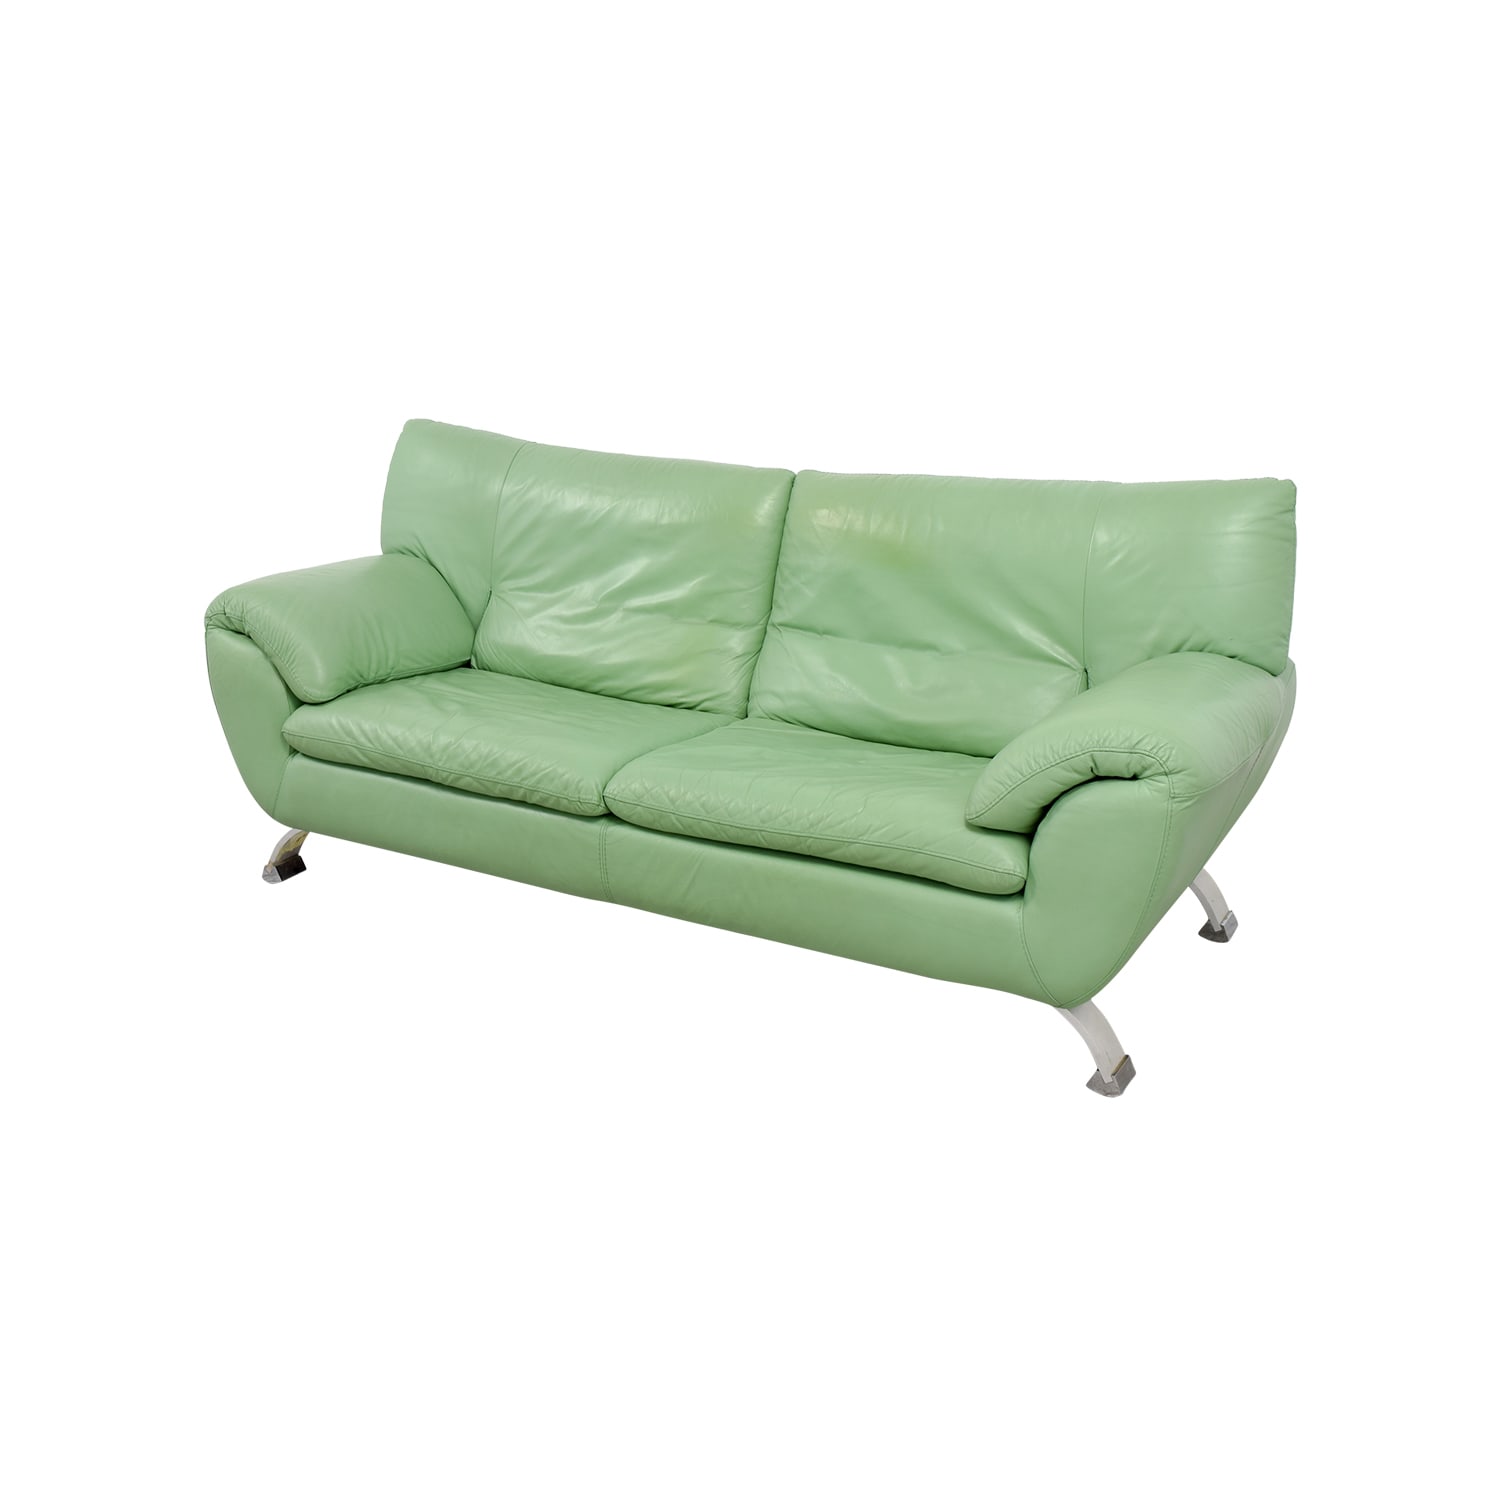 Nicoletti Nicoletti Green Leather Sofa for sale